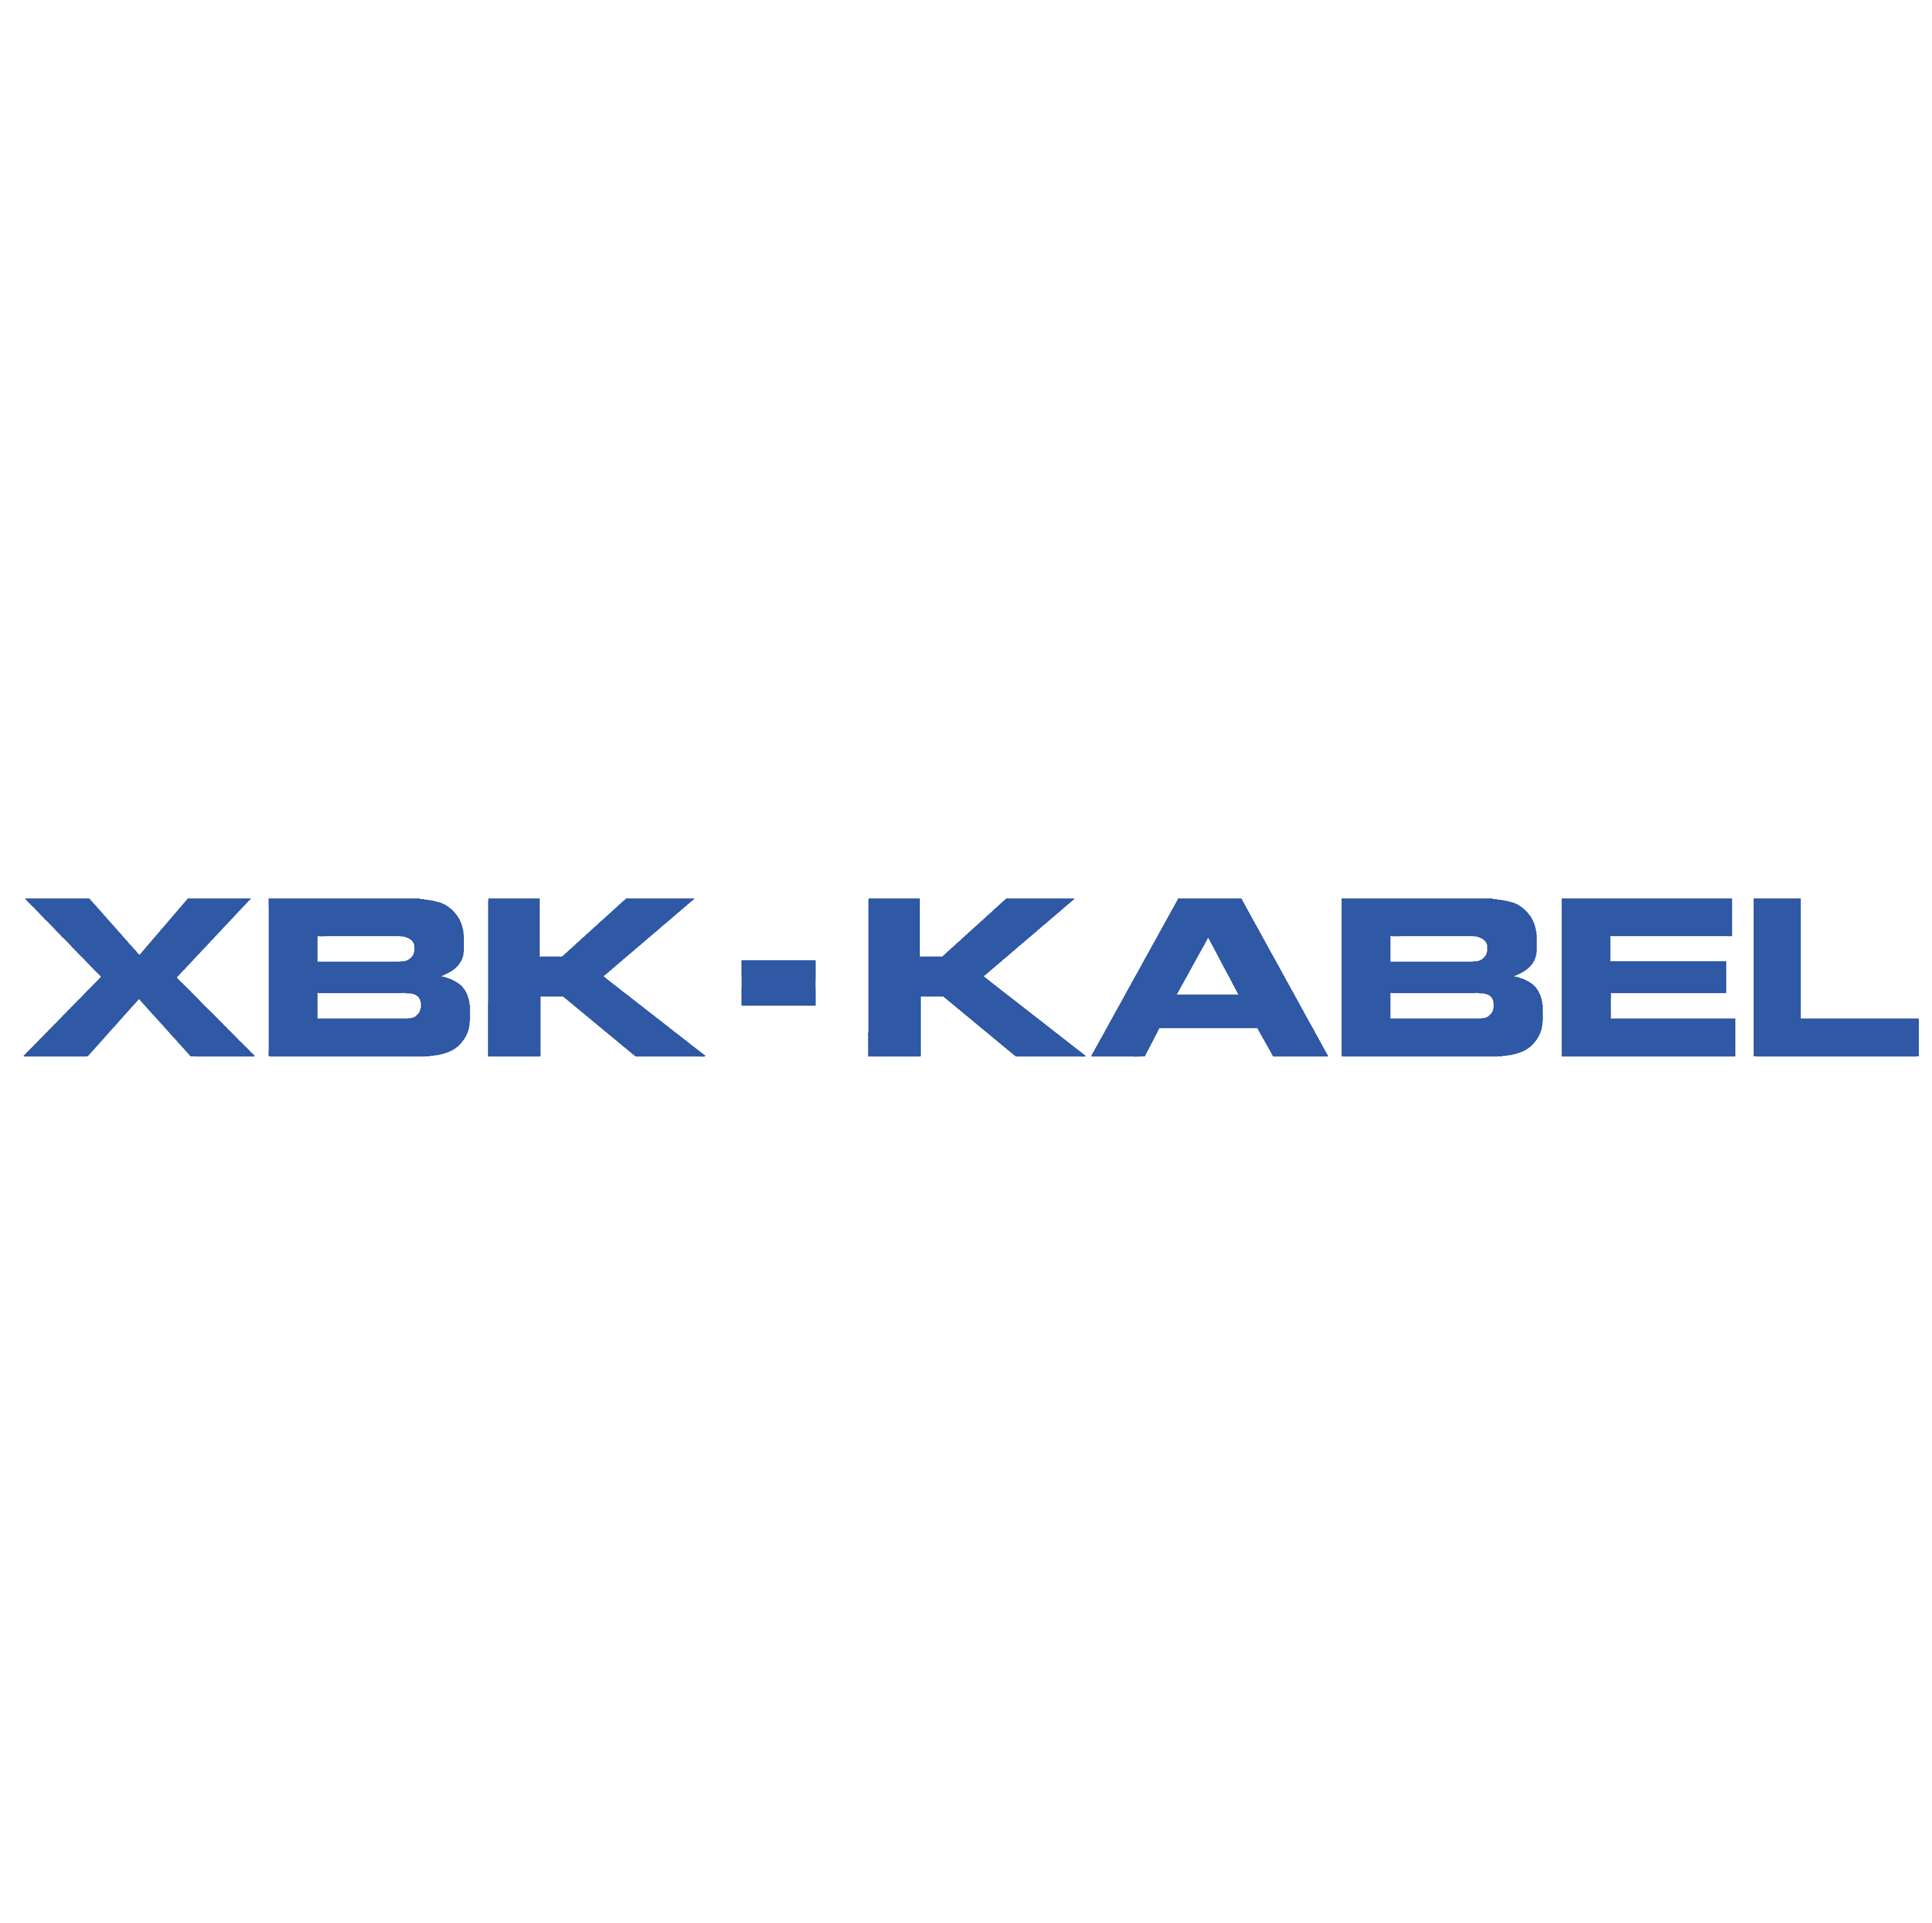 XBK-KABEL